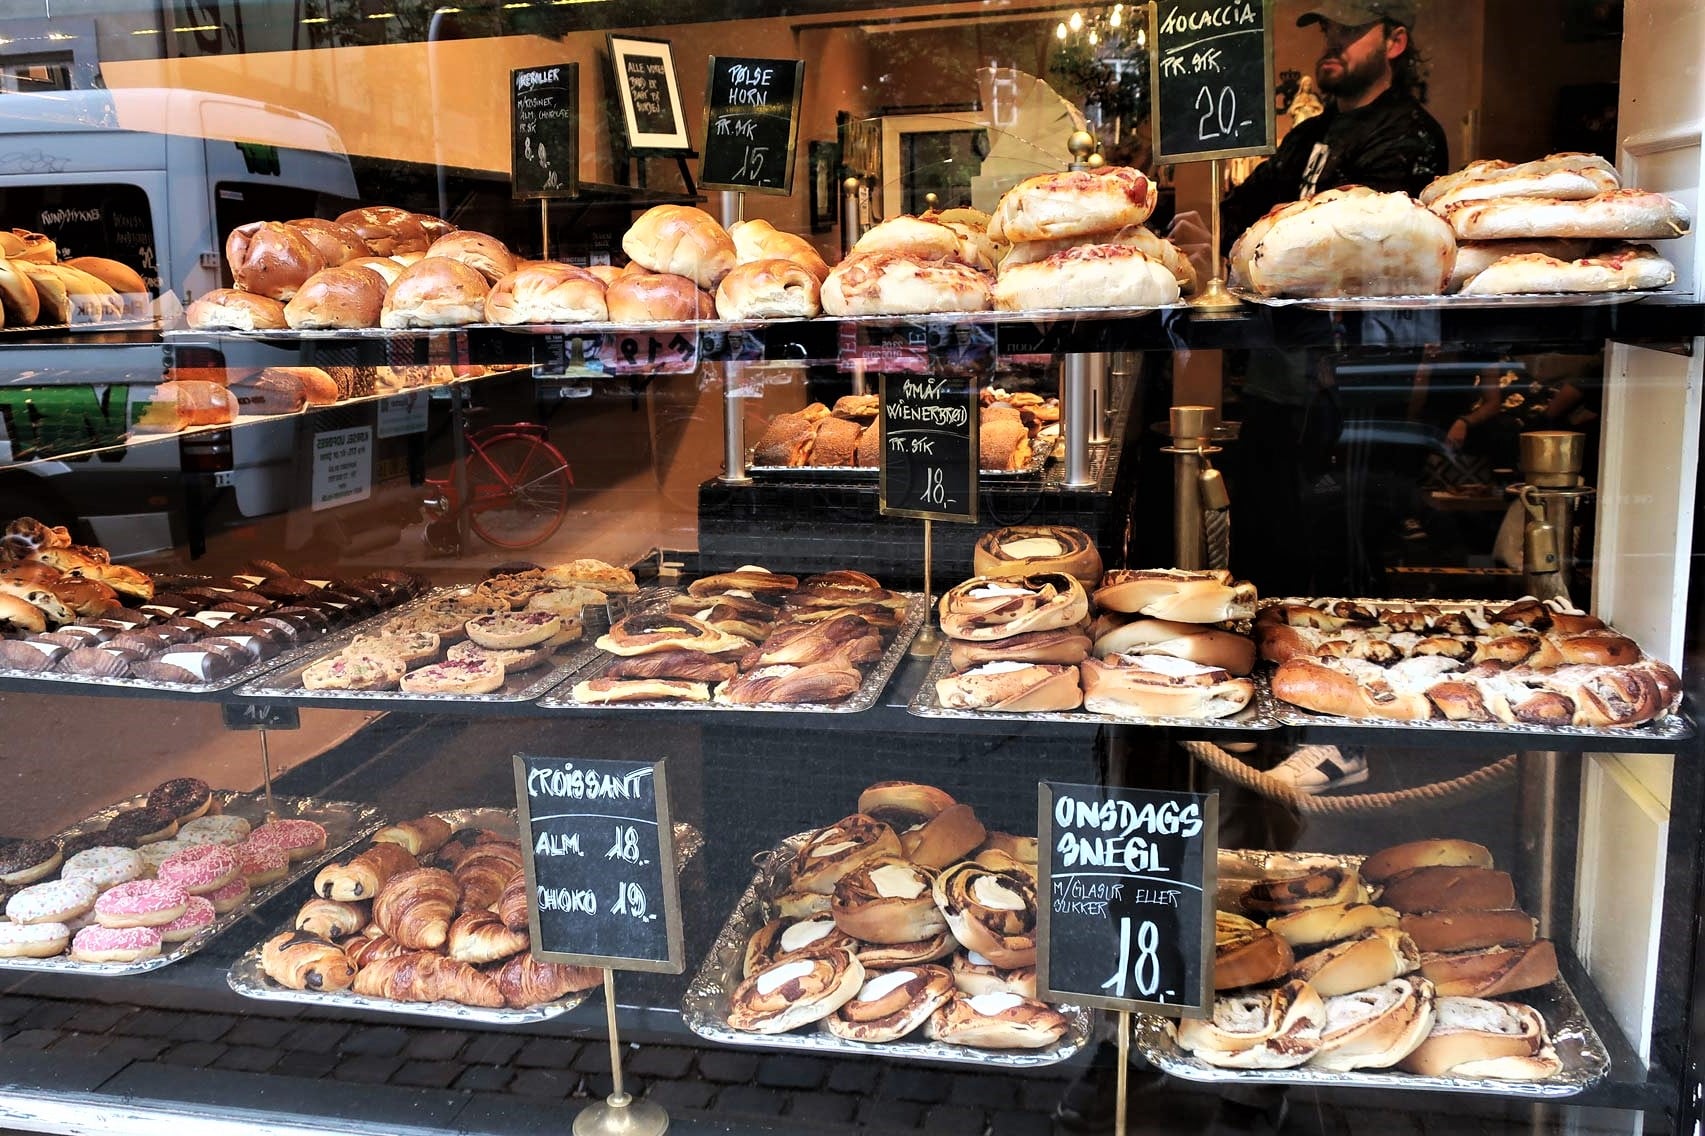 pastries-in-window-of-sankt-peders-bageri-bakery